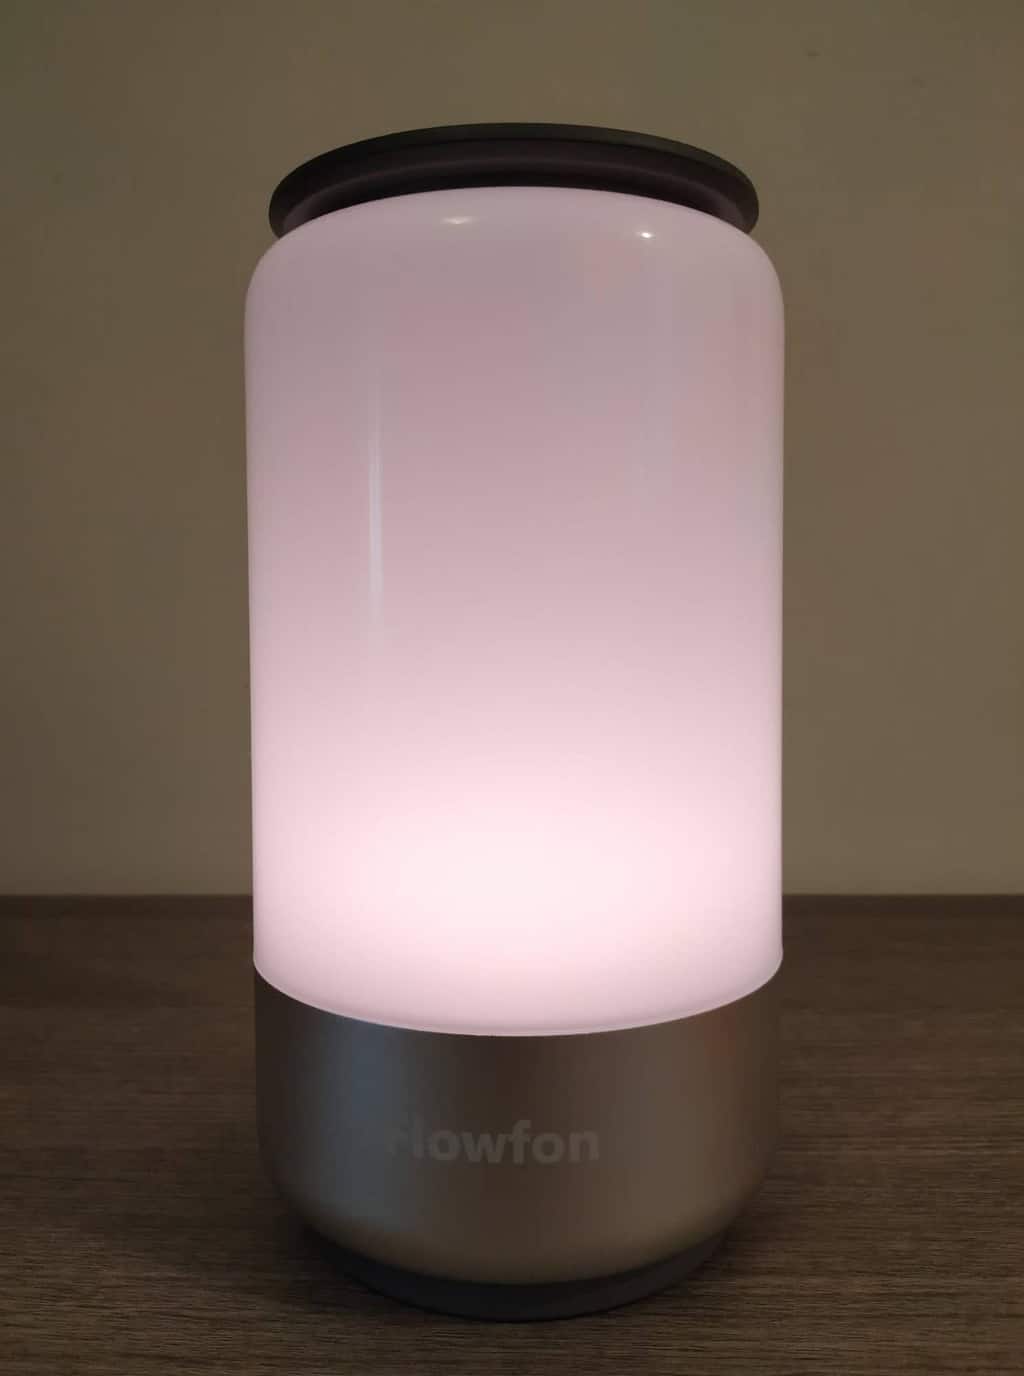 lampada smart flowfon compatibile con alexa e google home